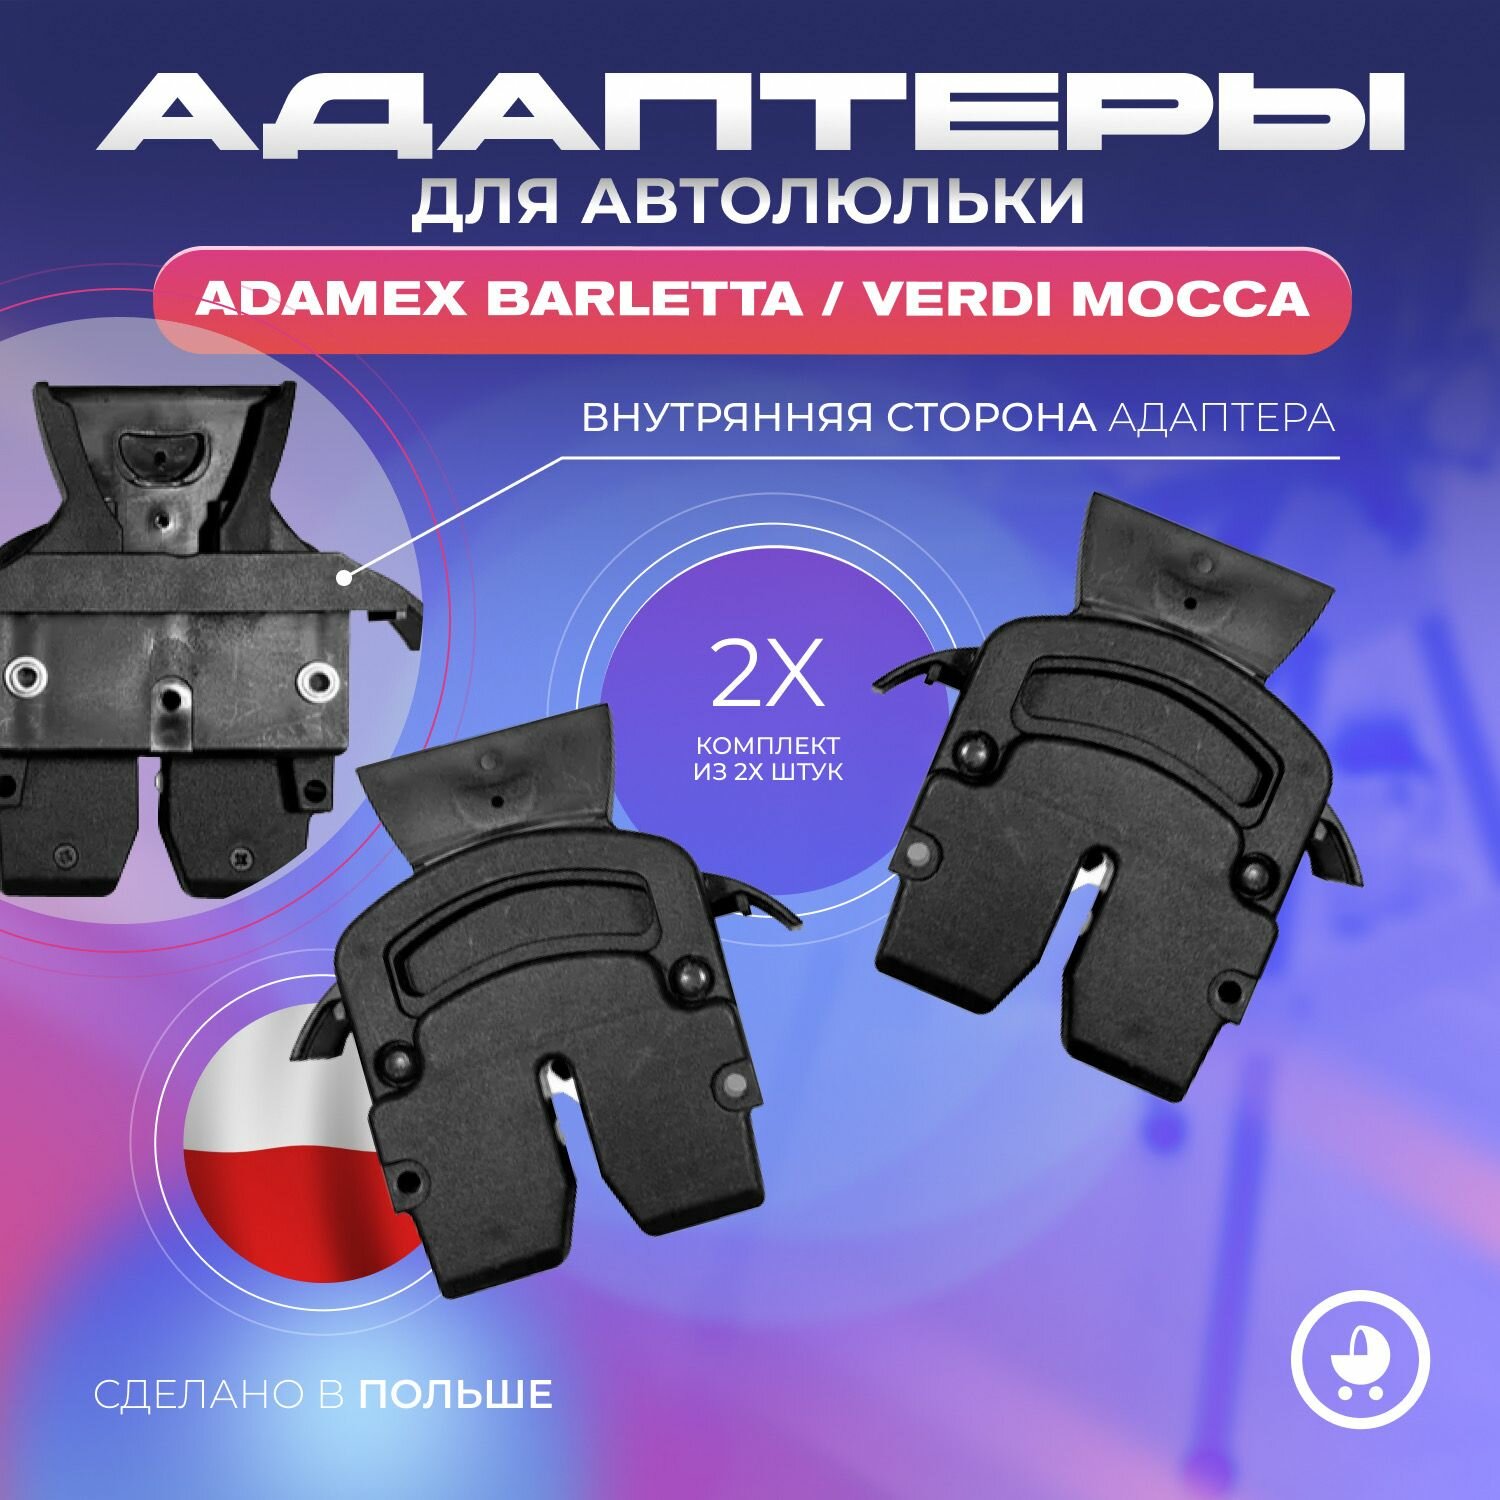 Адаптеры для автолюльки Adamex Barletta/Verdi Mocca